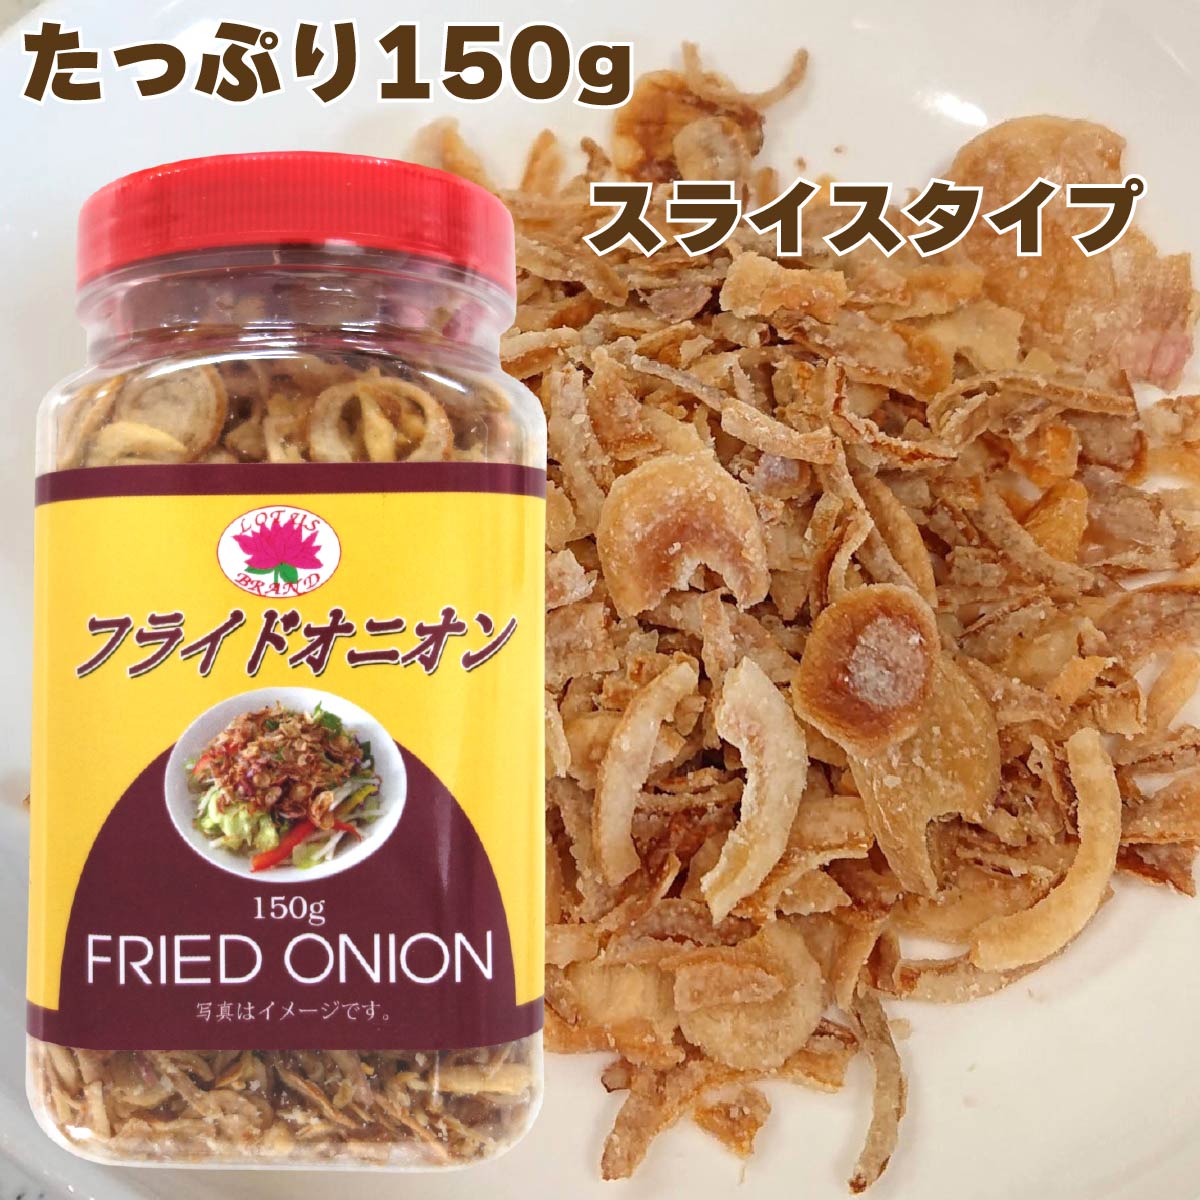 【公式】ロータスブランド フライドオニオン 150g (1個) 【食べごたえのあるスライスタイプ。サクサク食感が楽しめます】 Fried Onion Slice サラダ カレー ラーメン スープ